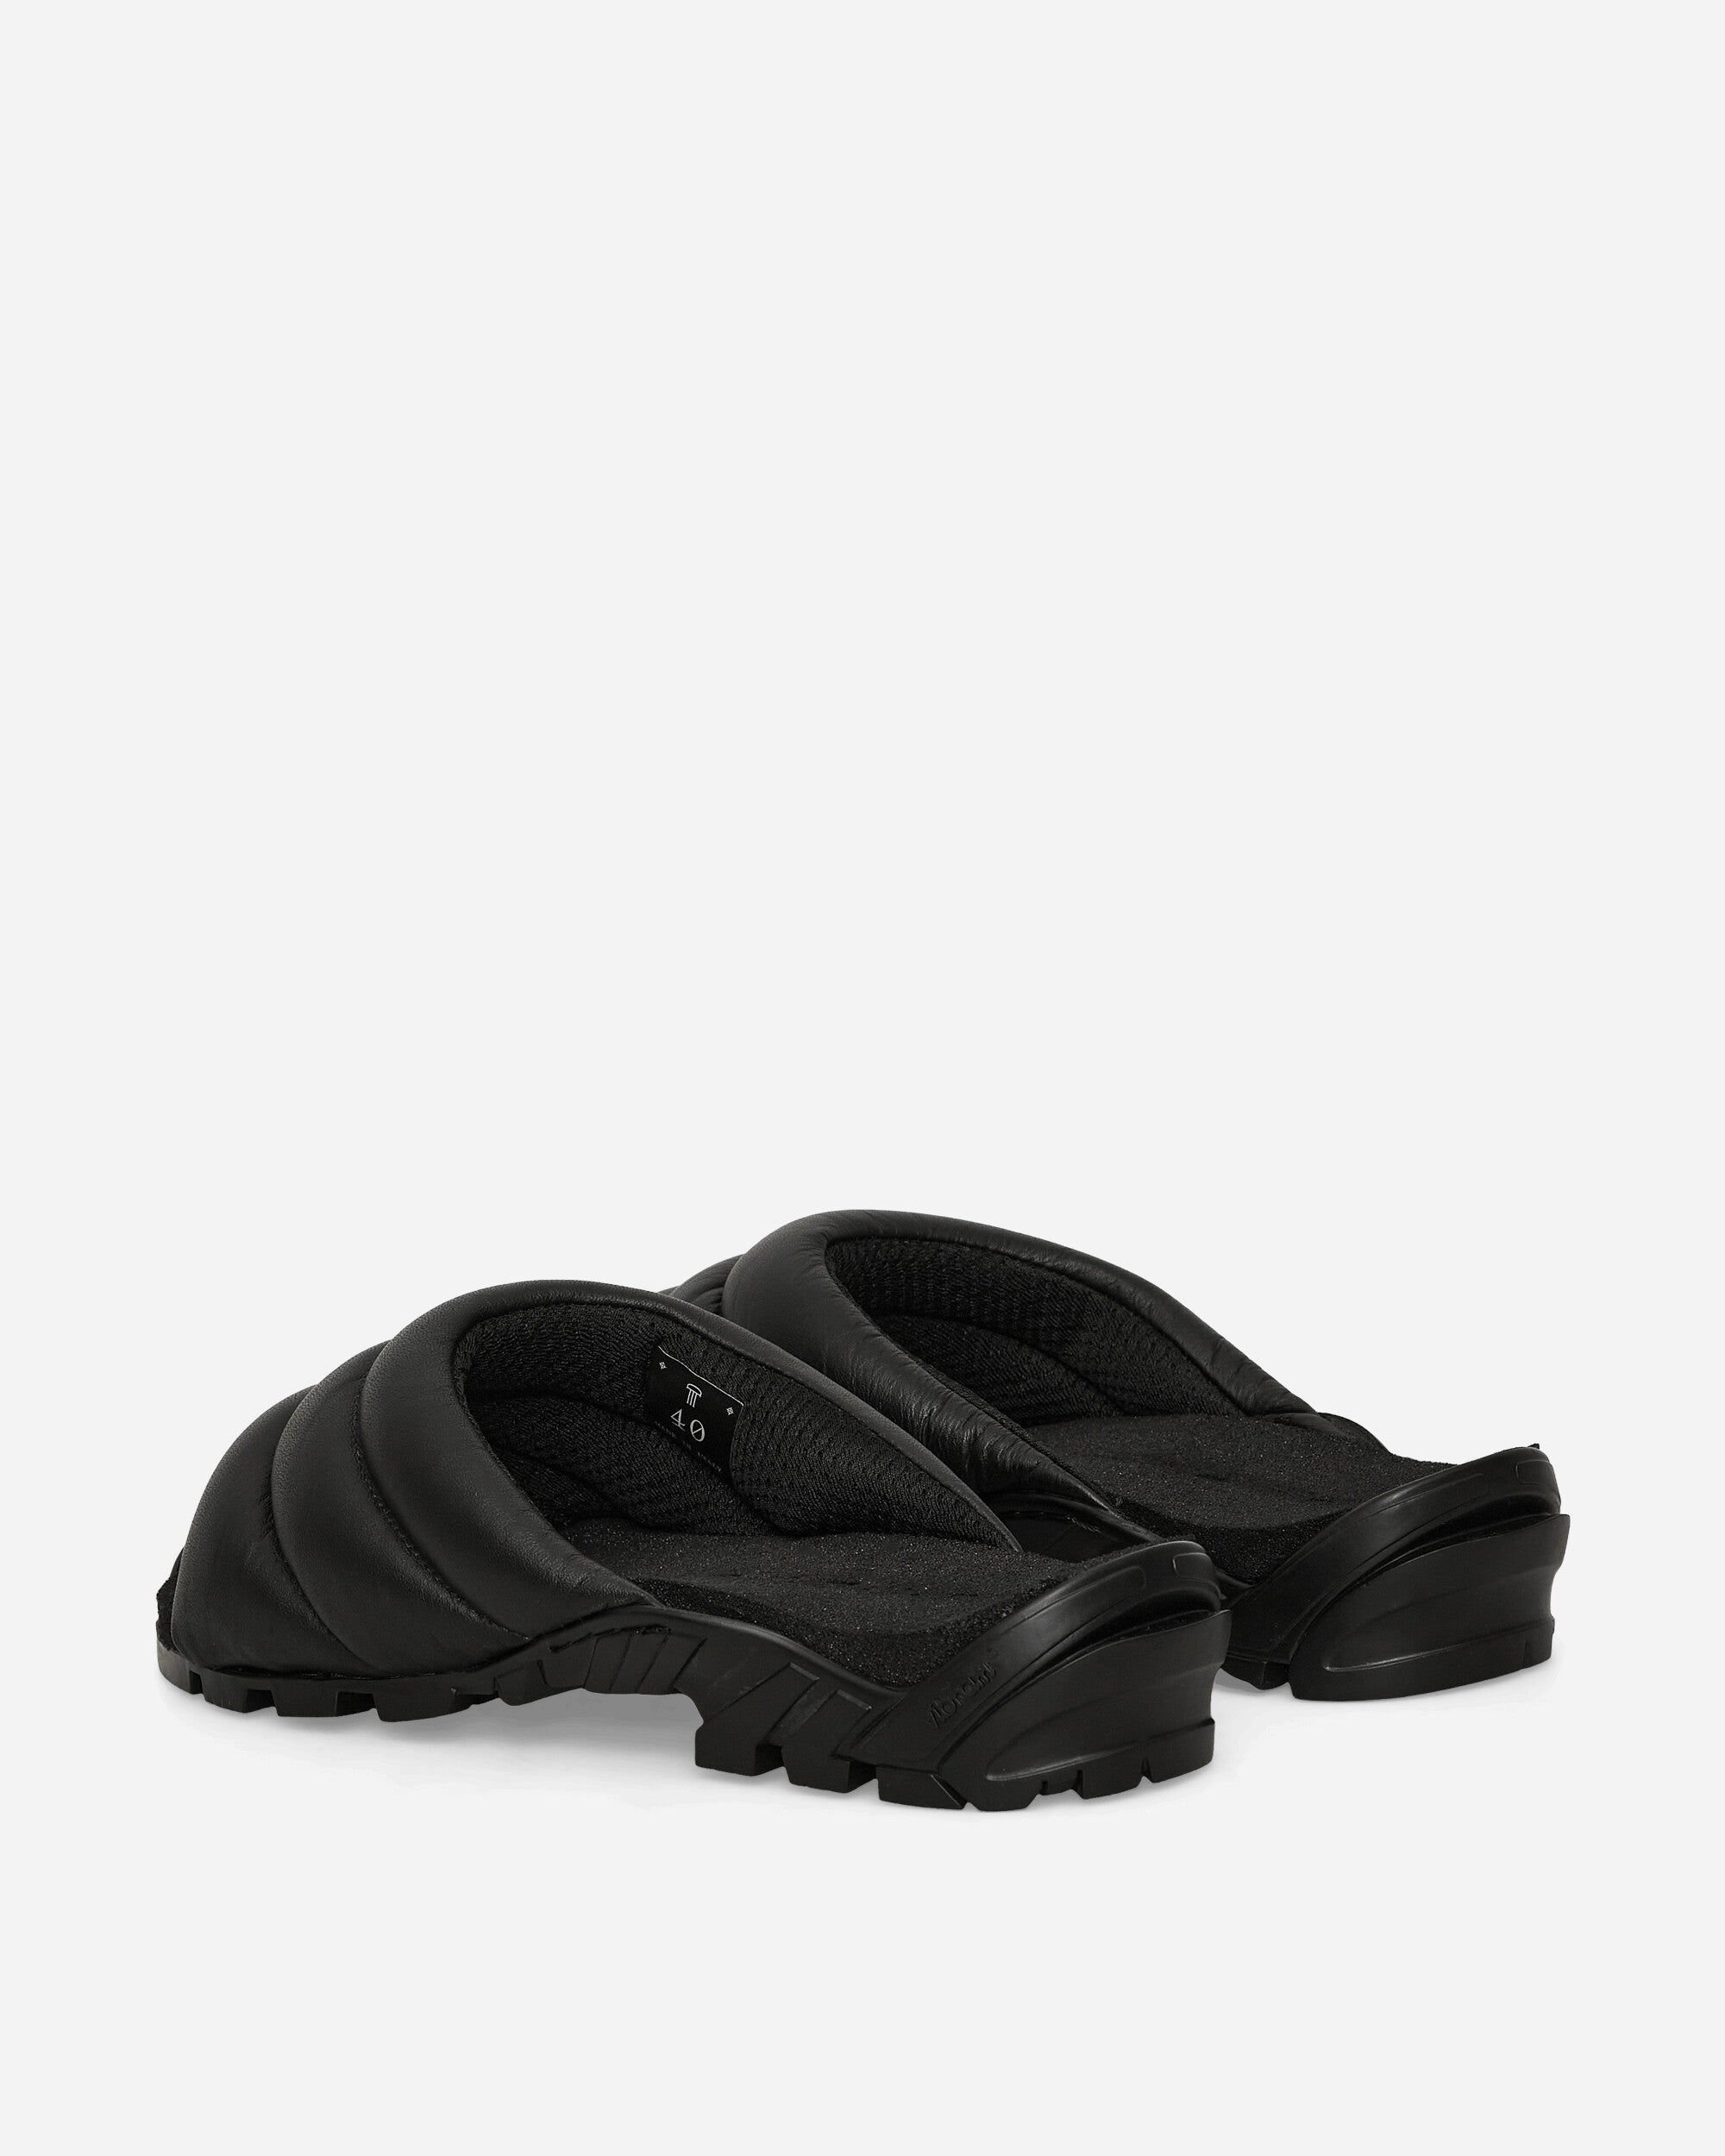 Demon Zhavata Black Black Sandals and Slides Sandals and Mules ZHAVATABLACK BLACK